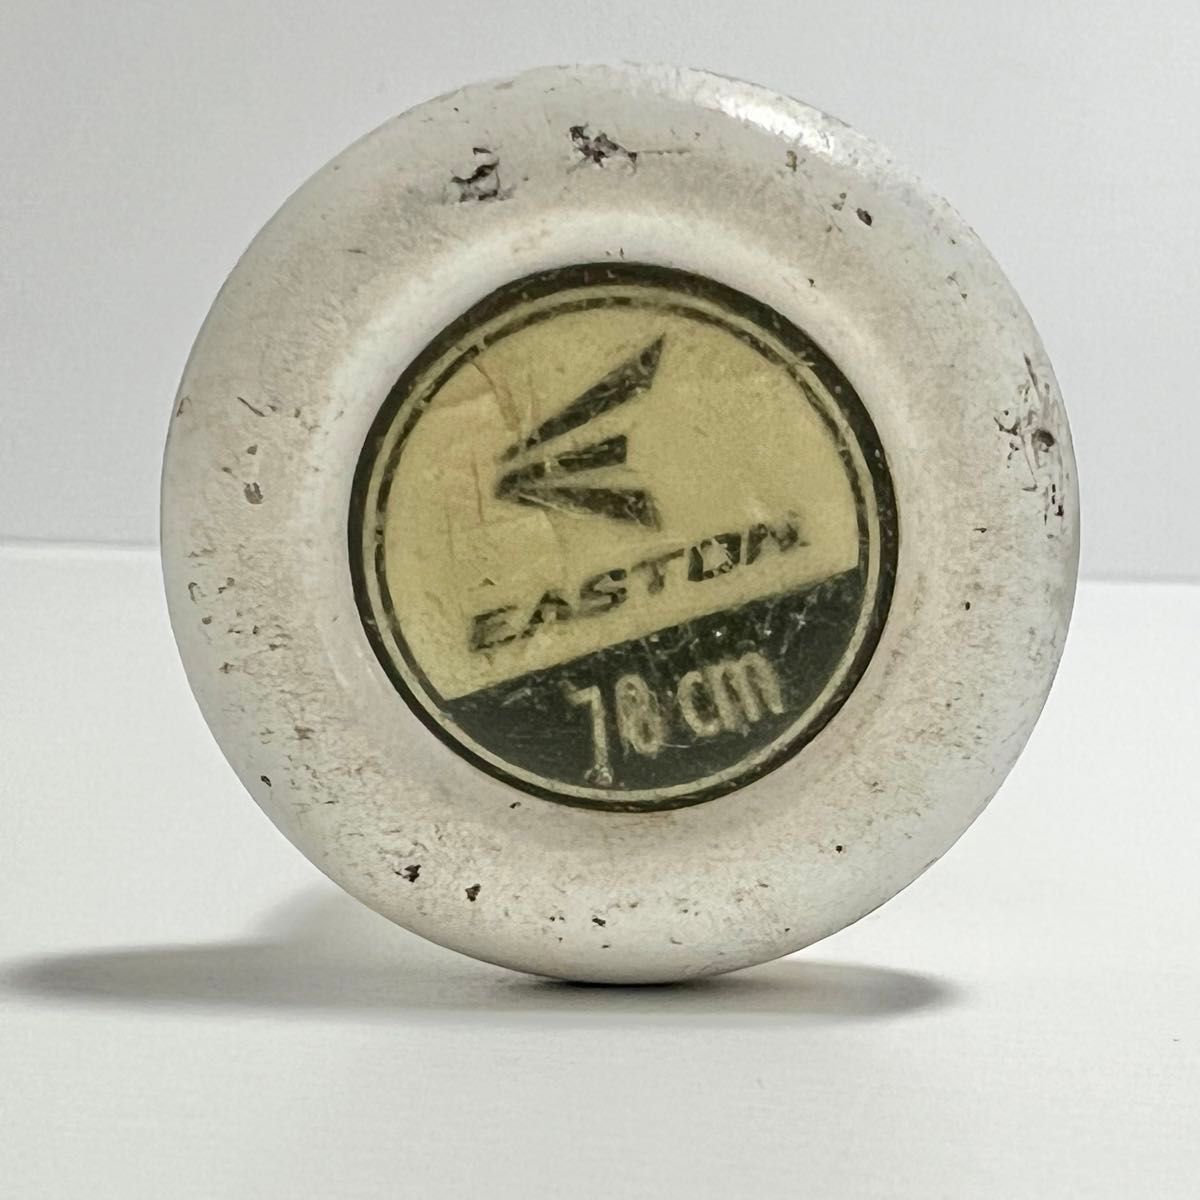 イーストン ソフトボール バット 2号 ステルススピード EASTON STEALTH SPEED